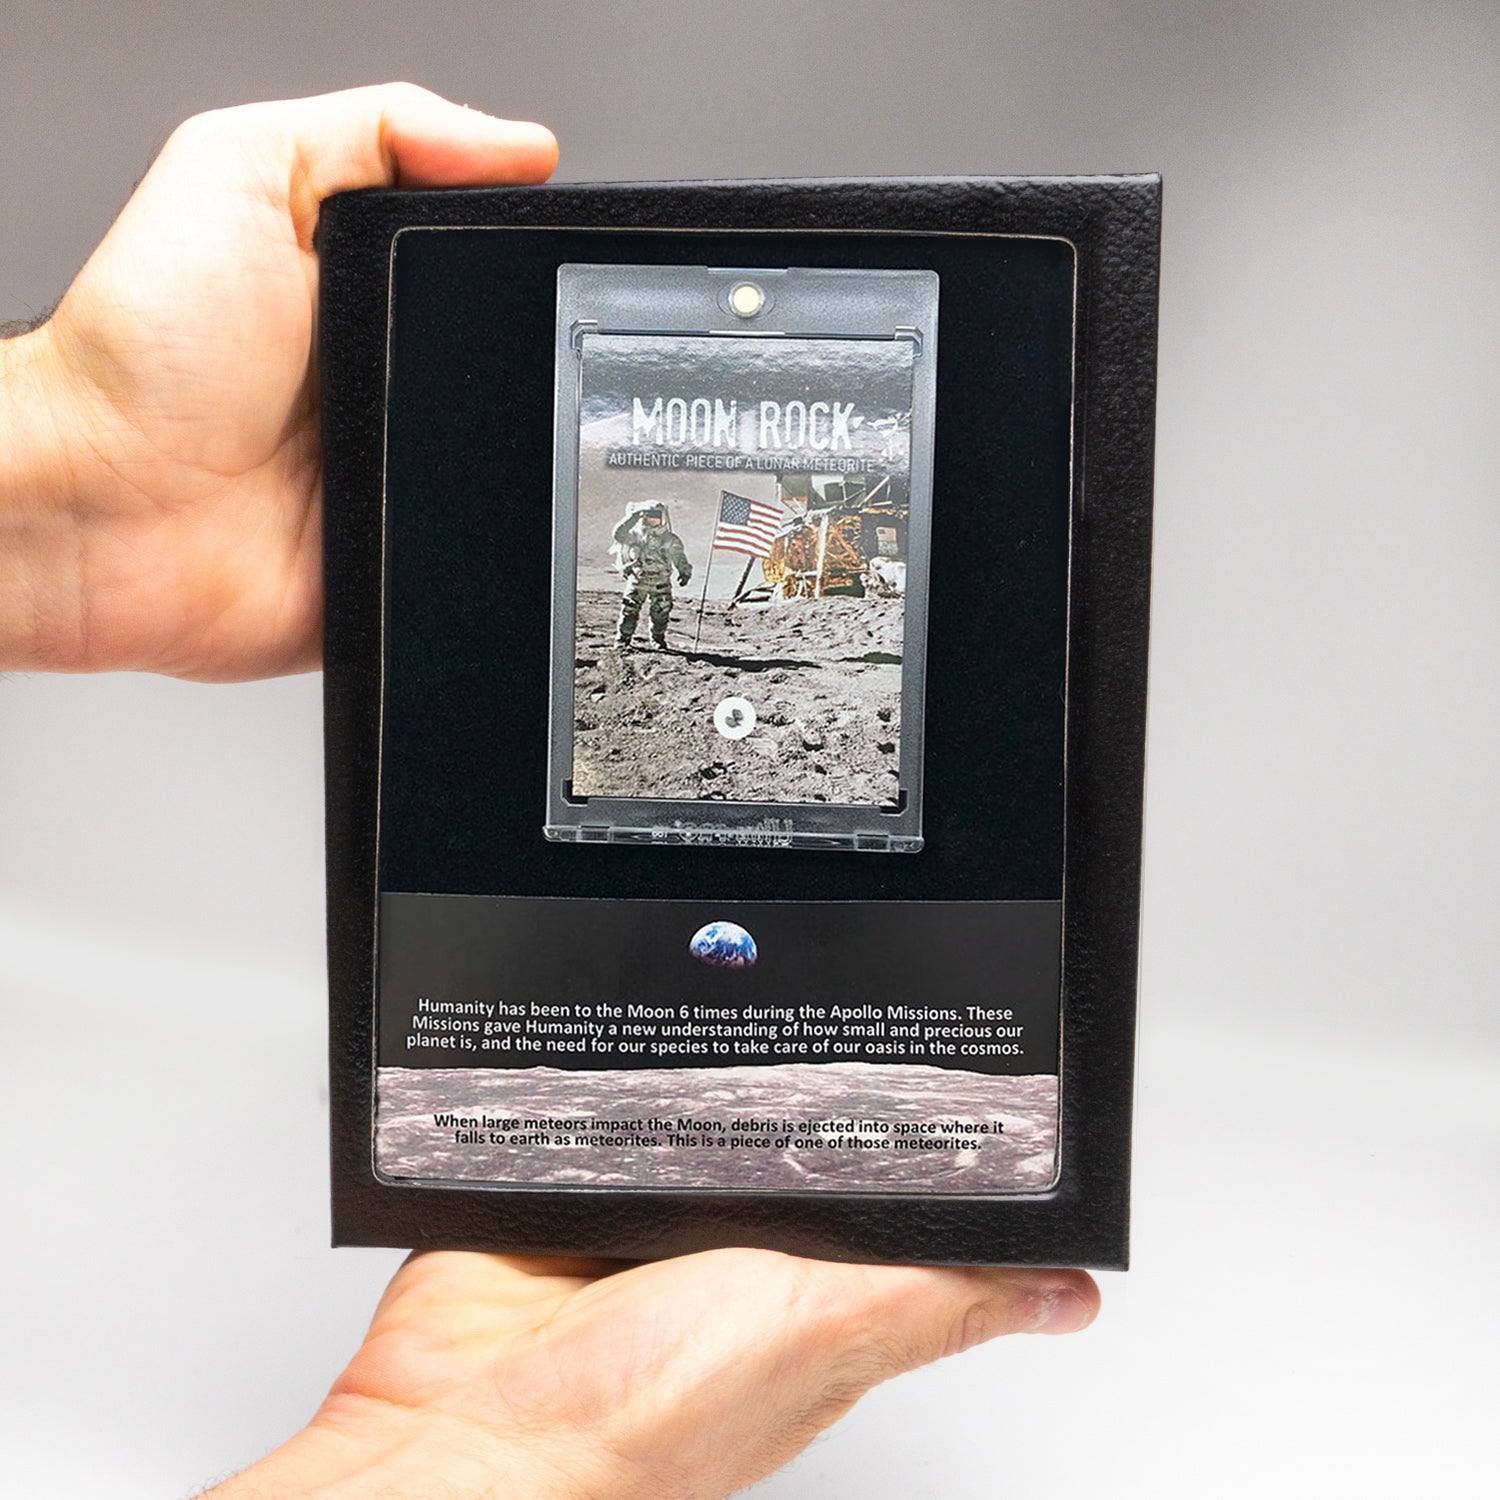 Genuine Mars Rock Lunar Meteorite in Display Box.